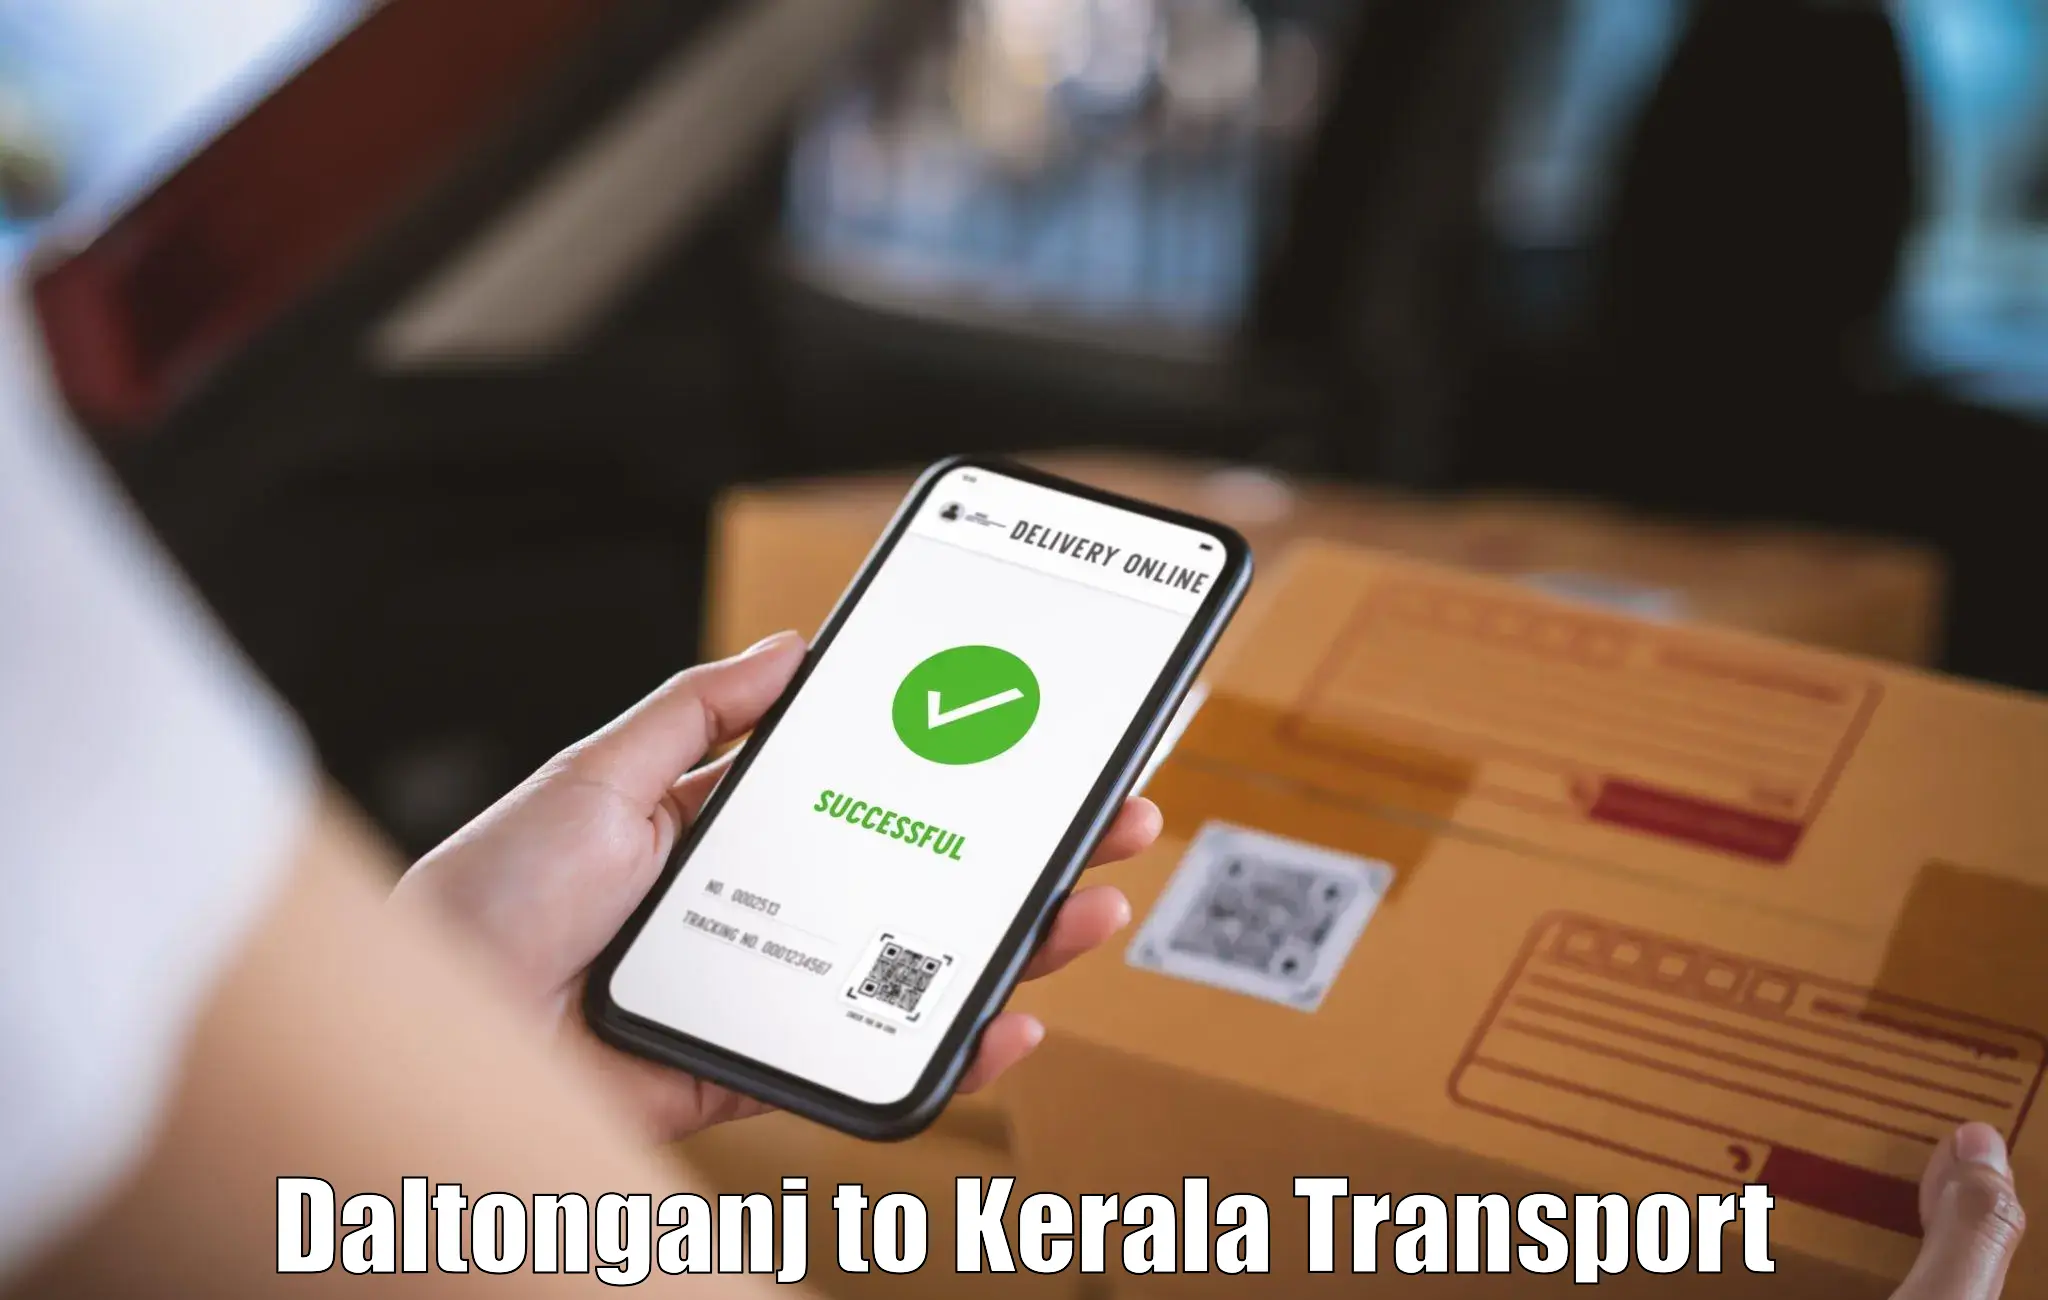 Two wheeler parcel service Daltonganj to Chalakudy